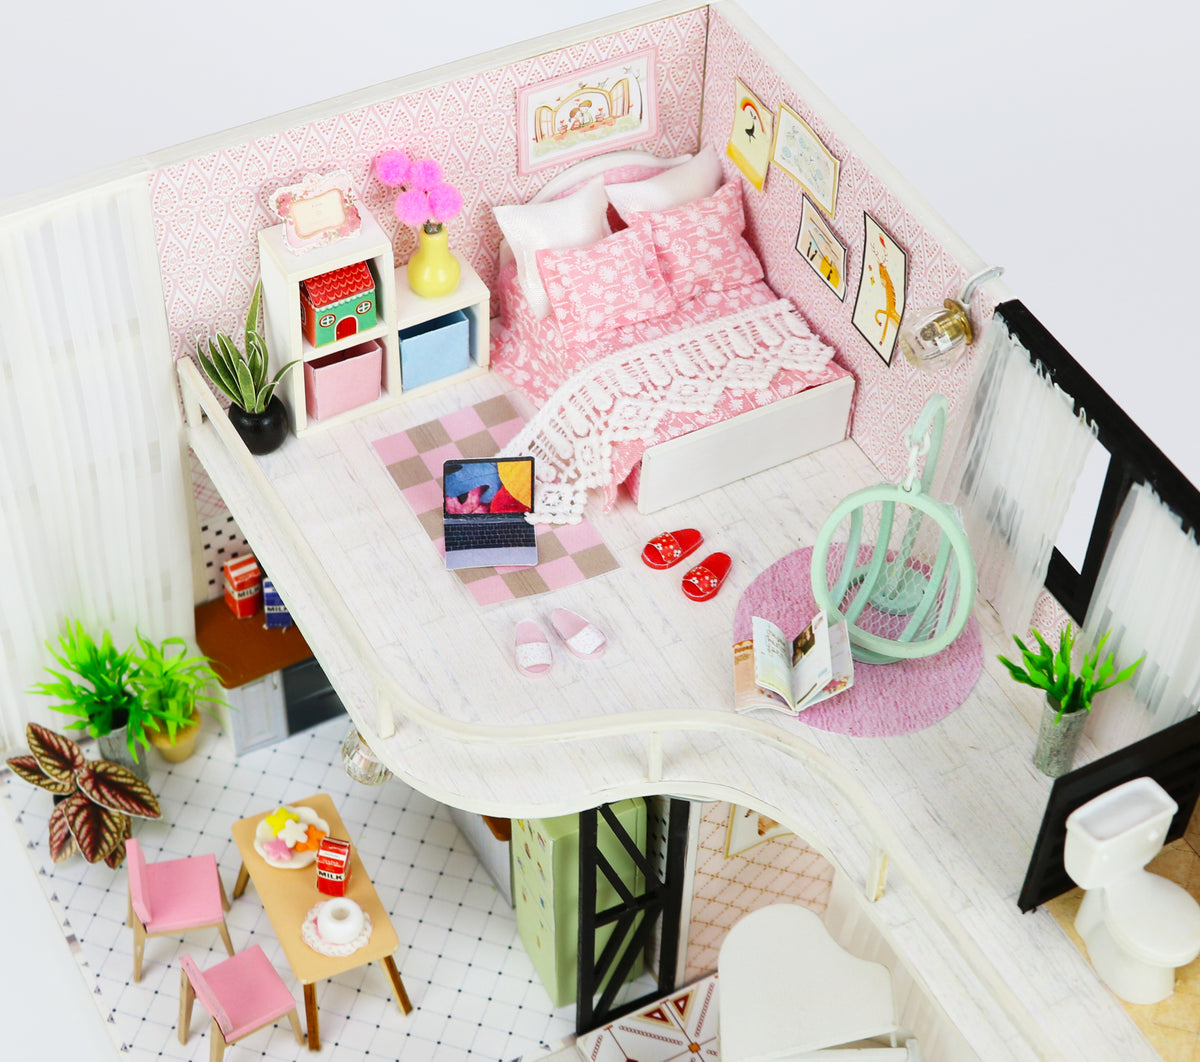 Tavolo da make up in miniatura a LED, toereio in miniatura, toereria della  casa delle bambole, BJD, MSD, mobili per bambole, diorama, scatola della  stanza, casa delle bambole -  Italia